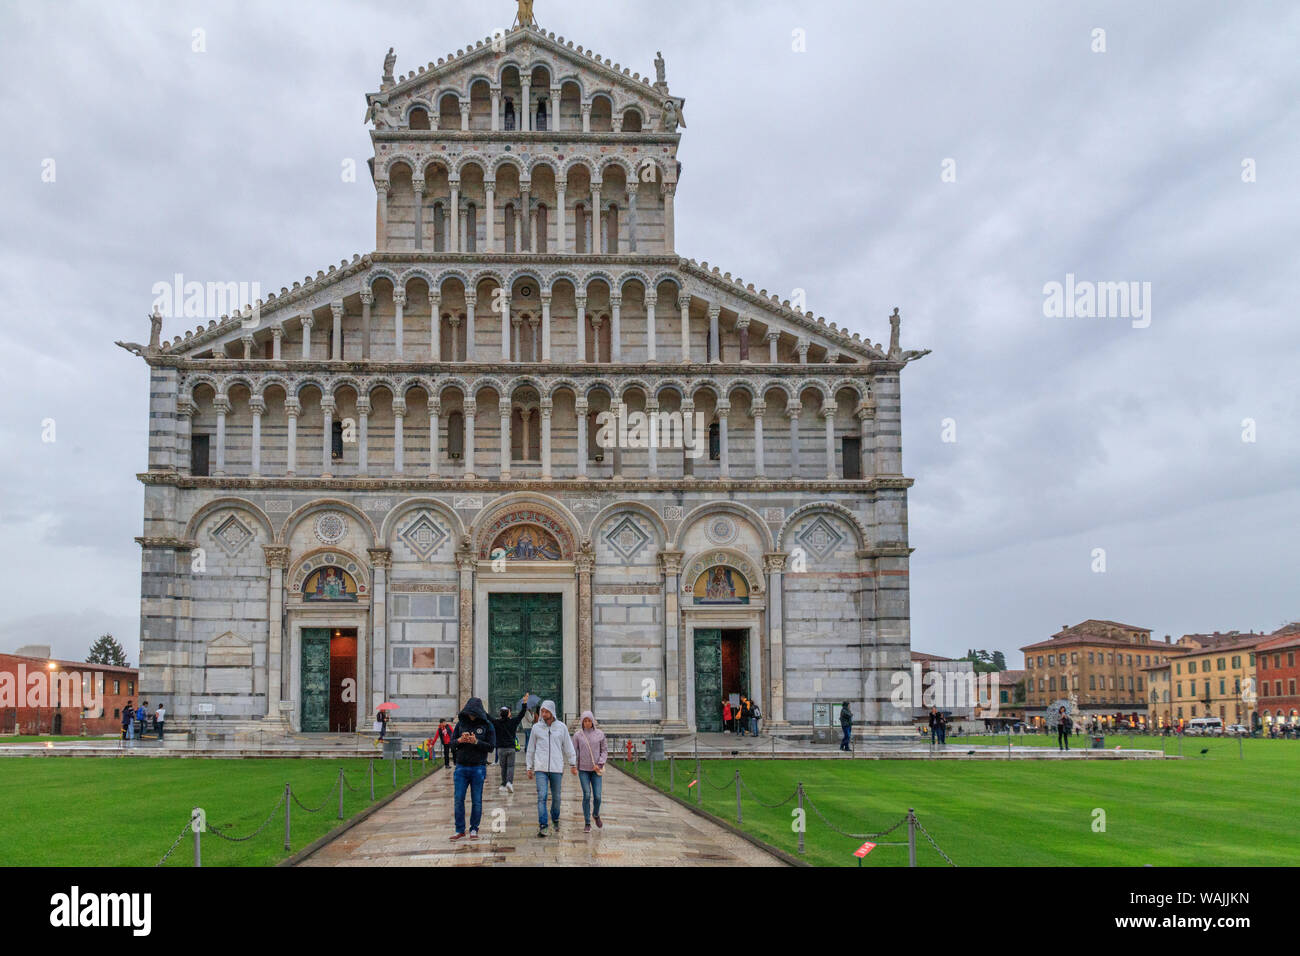 La cathédrale de Pise, Italie, Duomo di Pisa. Une cathédrale catholique de style roman pisan médiéval dédié à l'Assomption de la Vierge Marie, dans la Piazza dei Miracoli. Banque D'Images